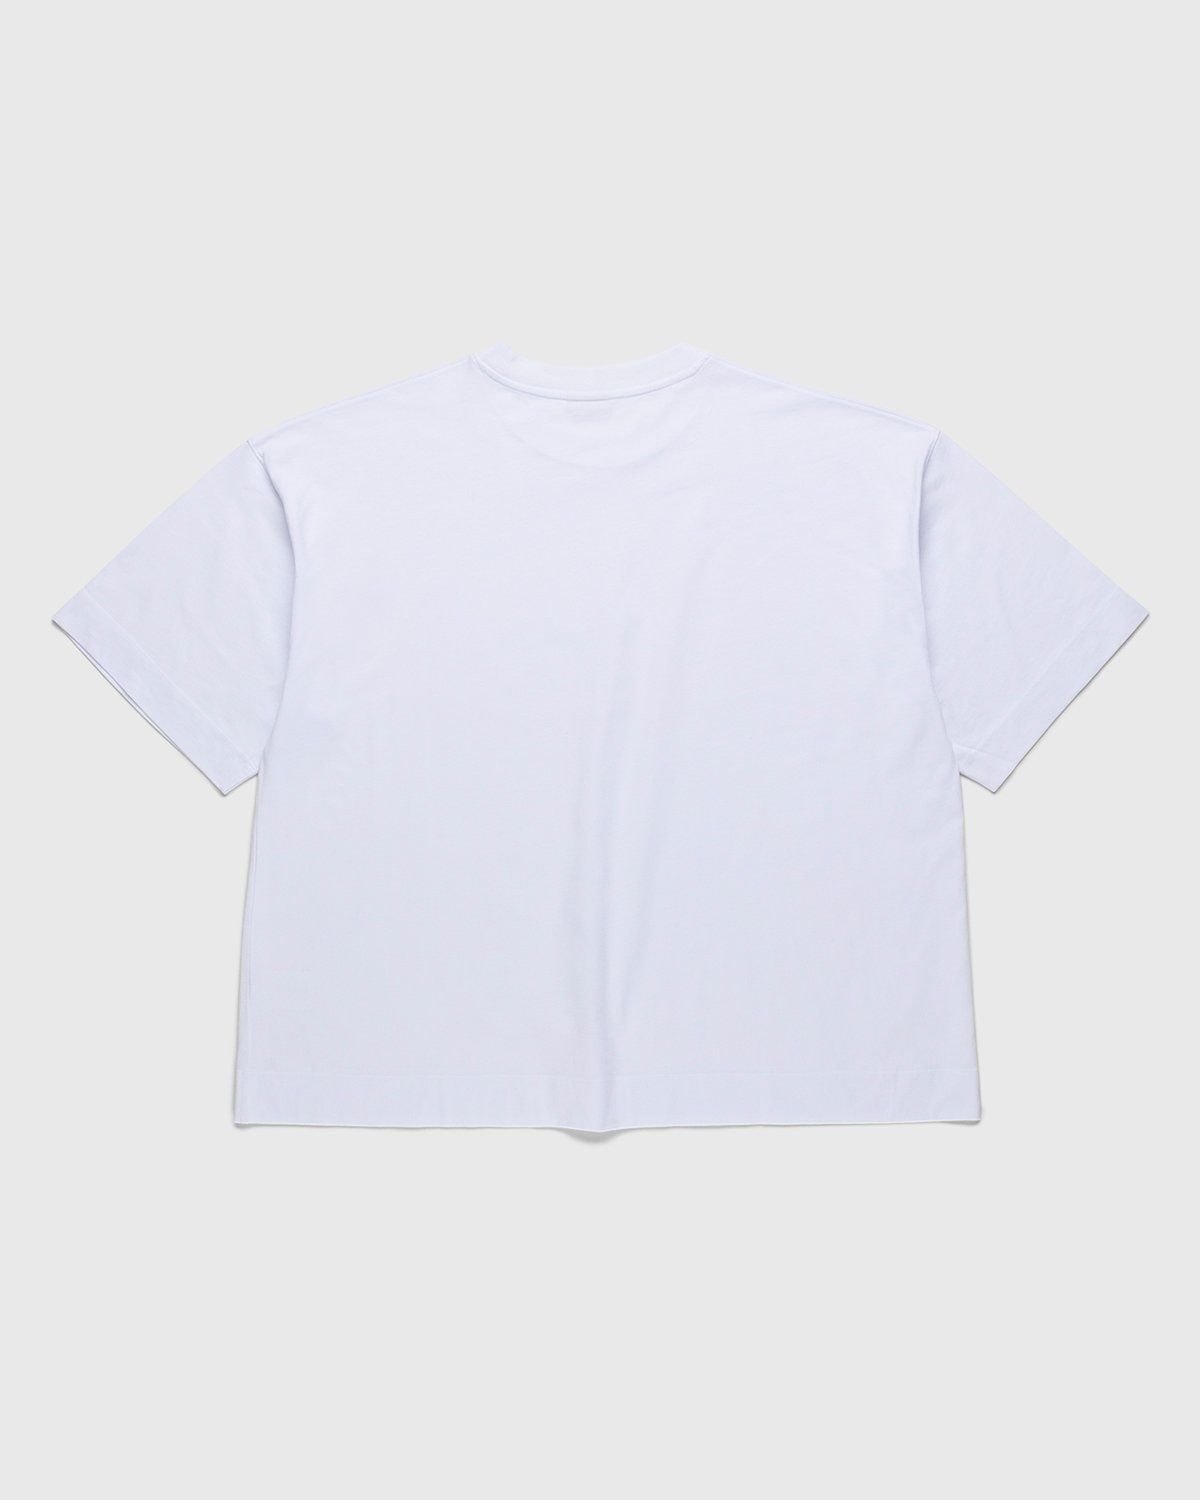 Dries van Noten – Hen Oversized T-Shirt White - Tops - White - Image 1